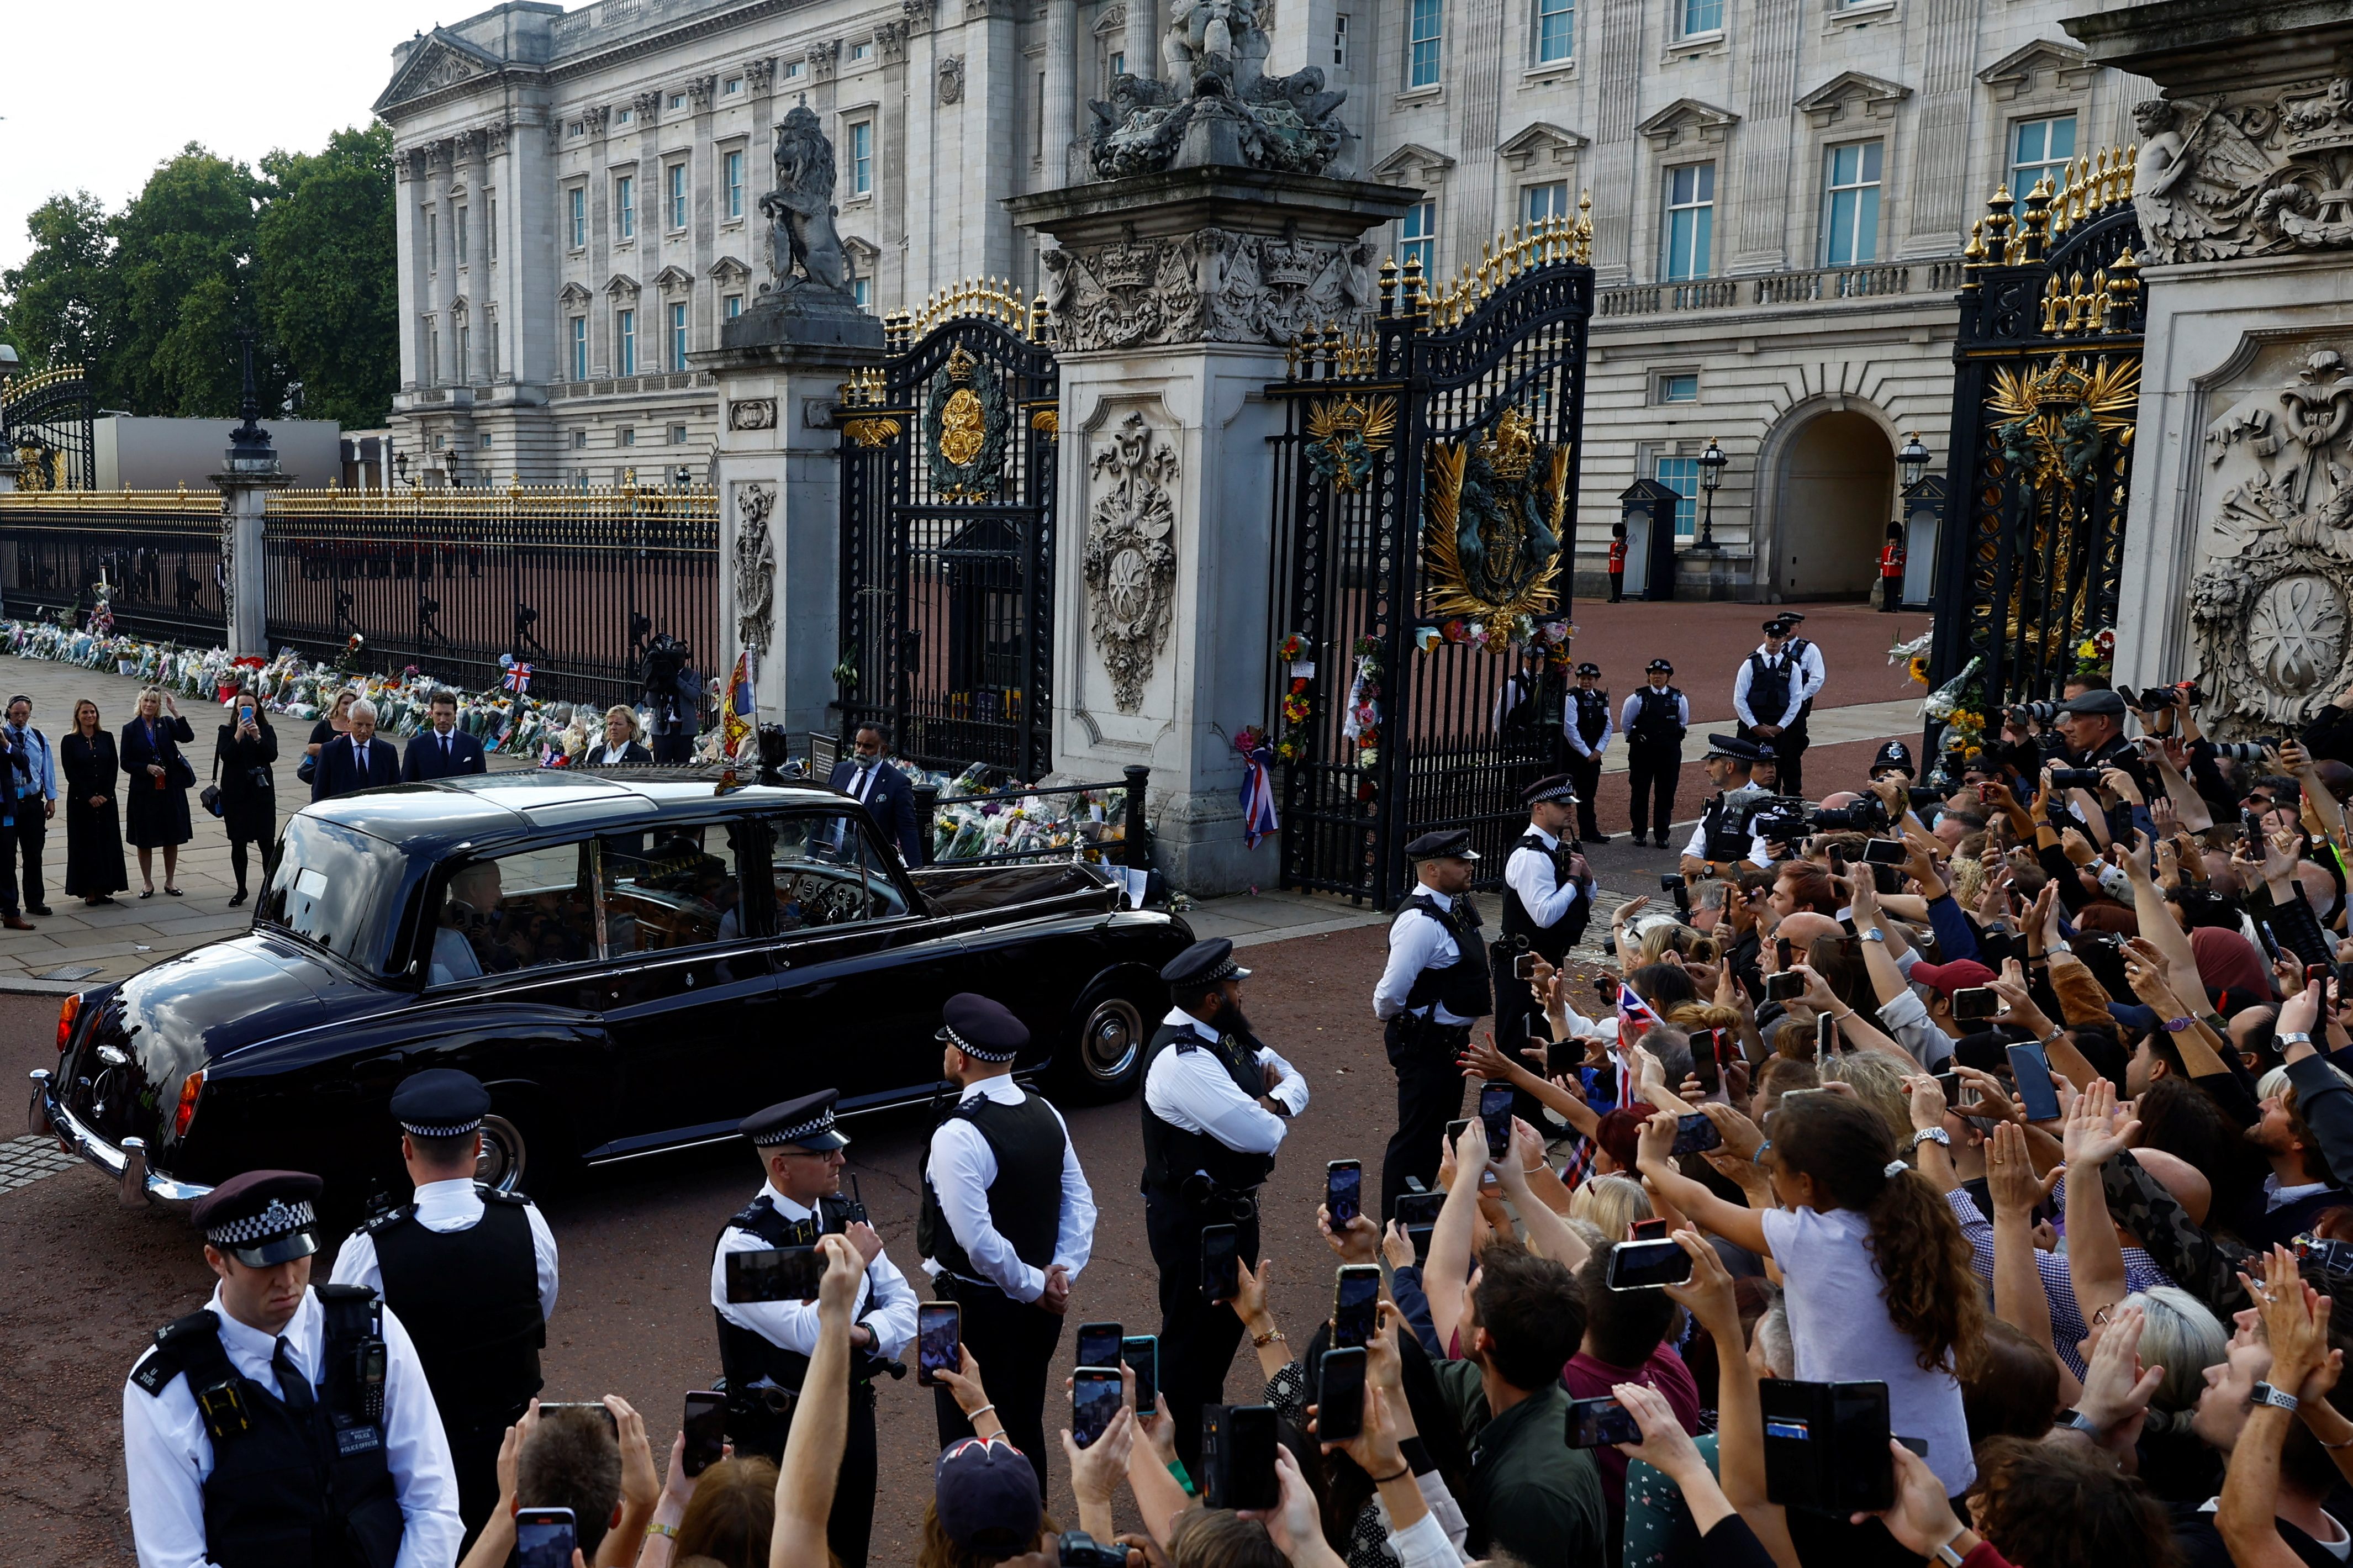 Carlos recibió el afecto de la gente en su llegada a Buckingham (REUTERS/Andrew Boyers)